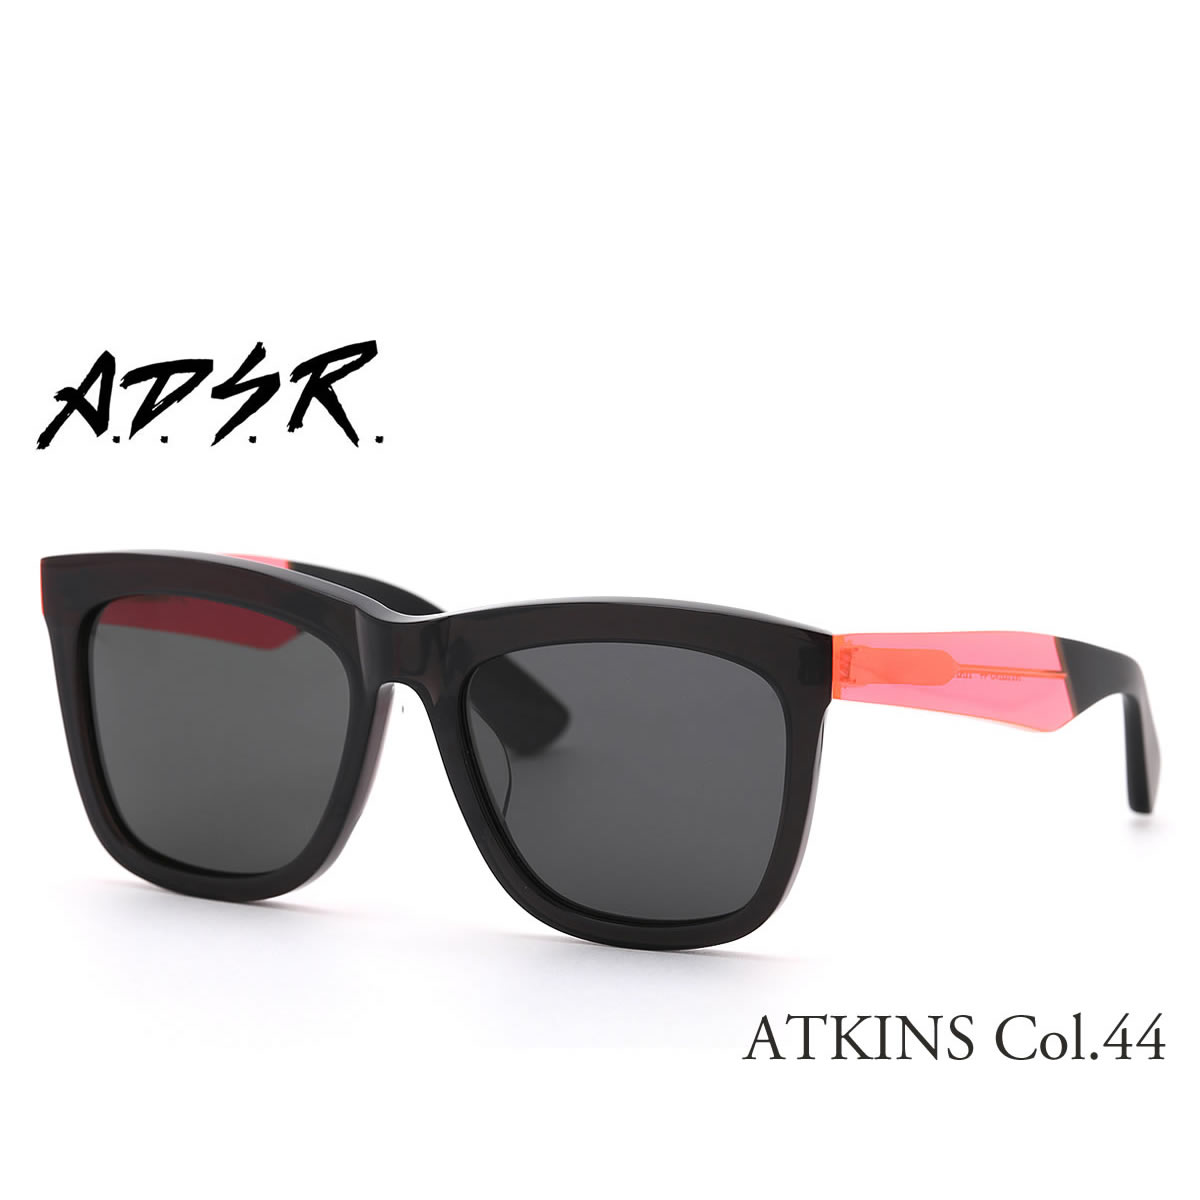 A.D.S.R. ATKINS 44 56サイズ エーディーエスアール ADSR サングラス メンズ レディース | メガネ・サングラスのThat’s